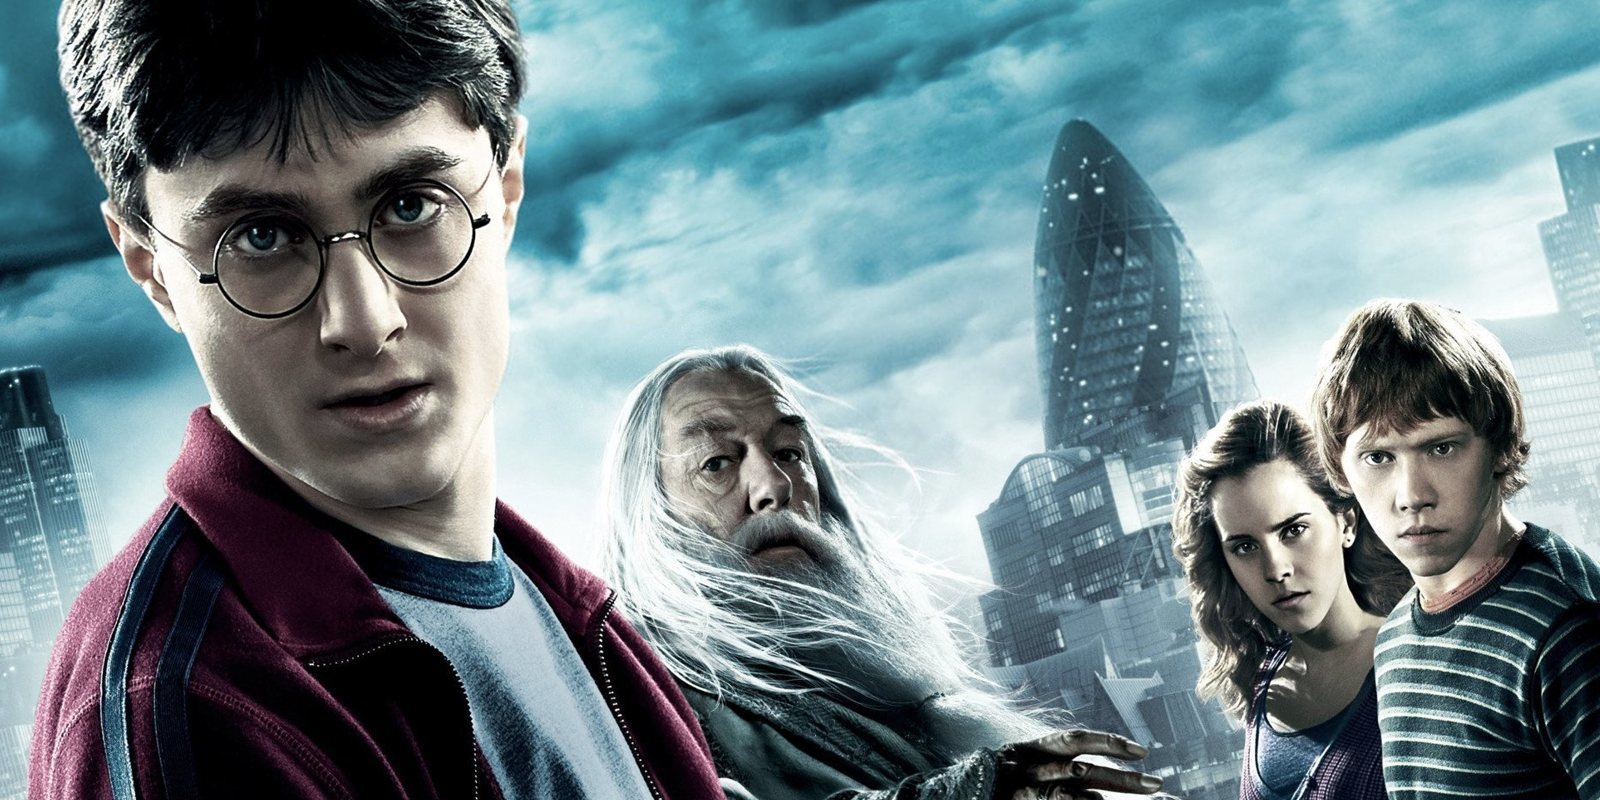 Warner Bros. desmiente que haya una serie sobre 'Harry Potter' en desarrollo